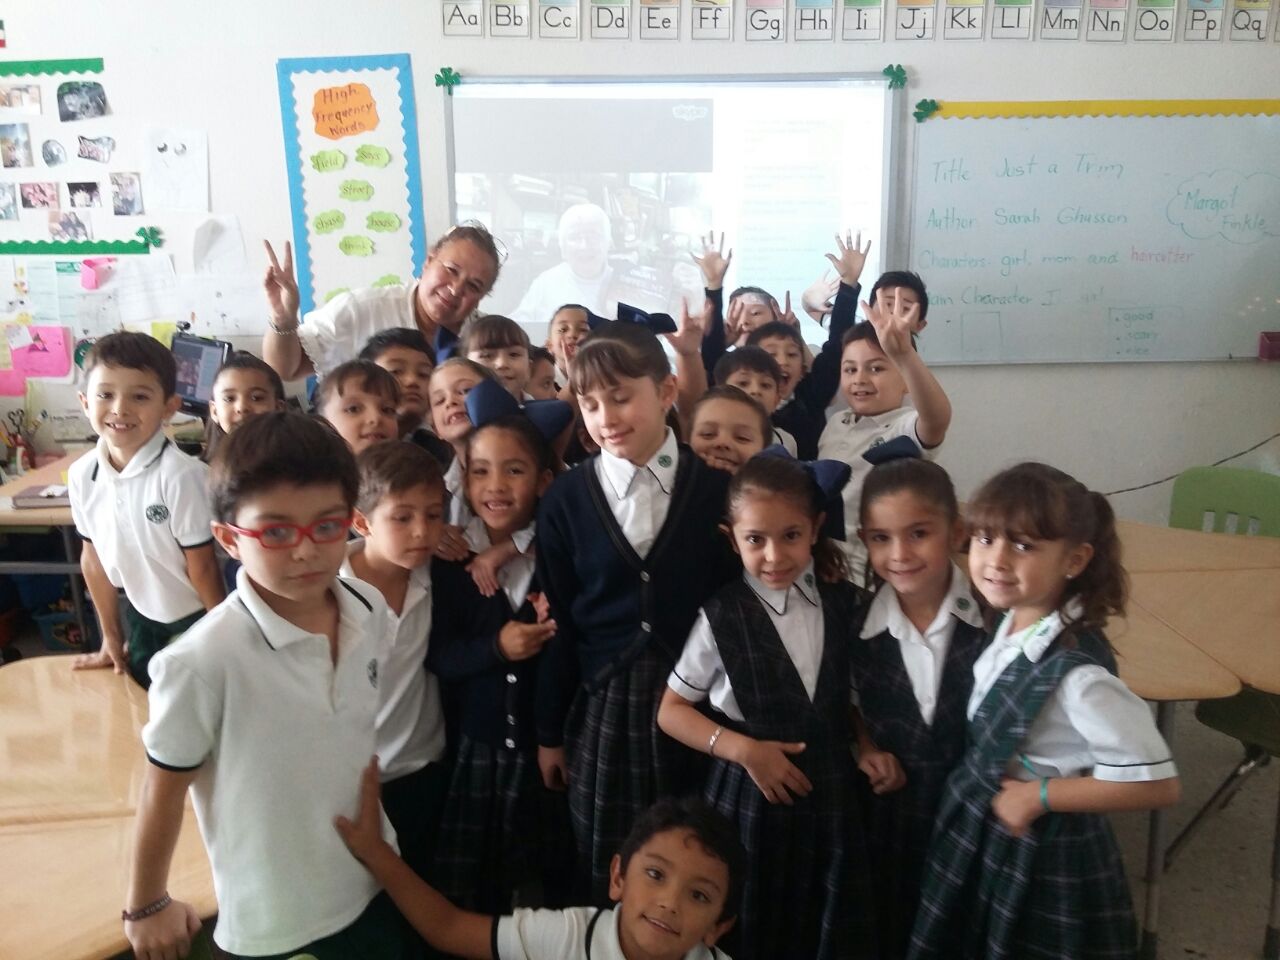 Margot Visits a Classroom via SKYPE